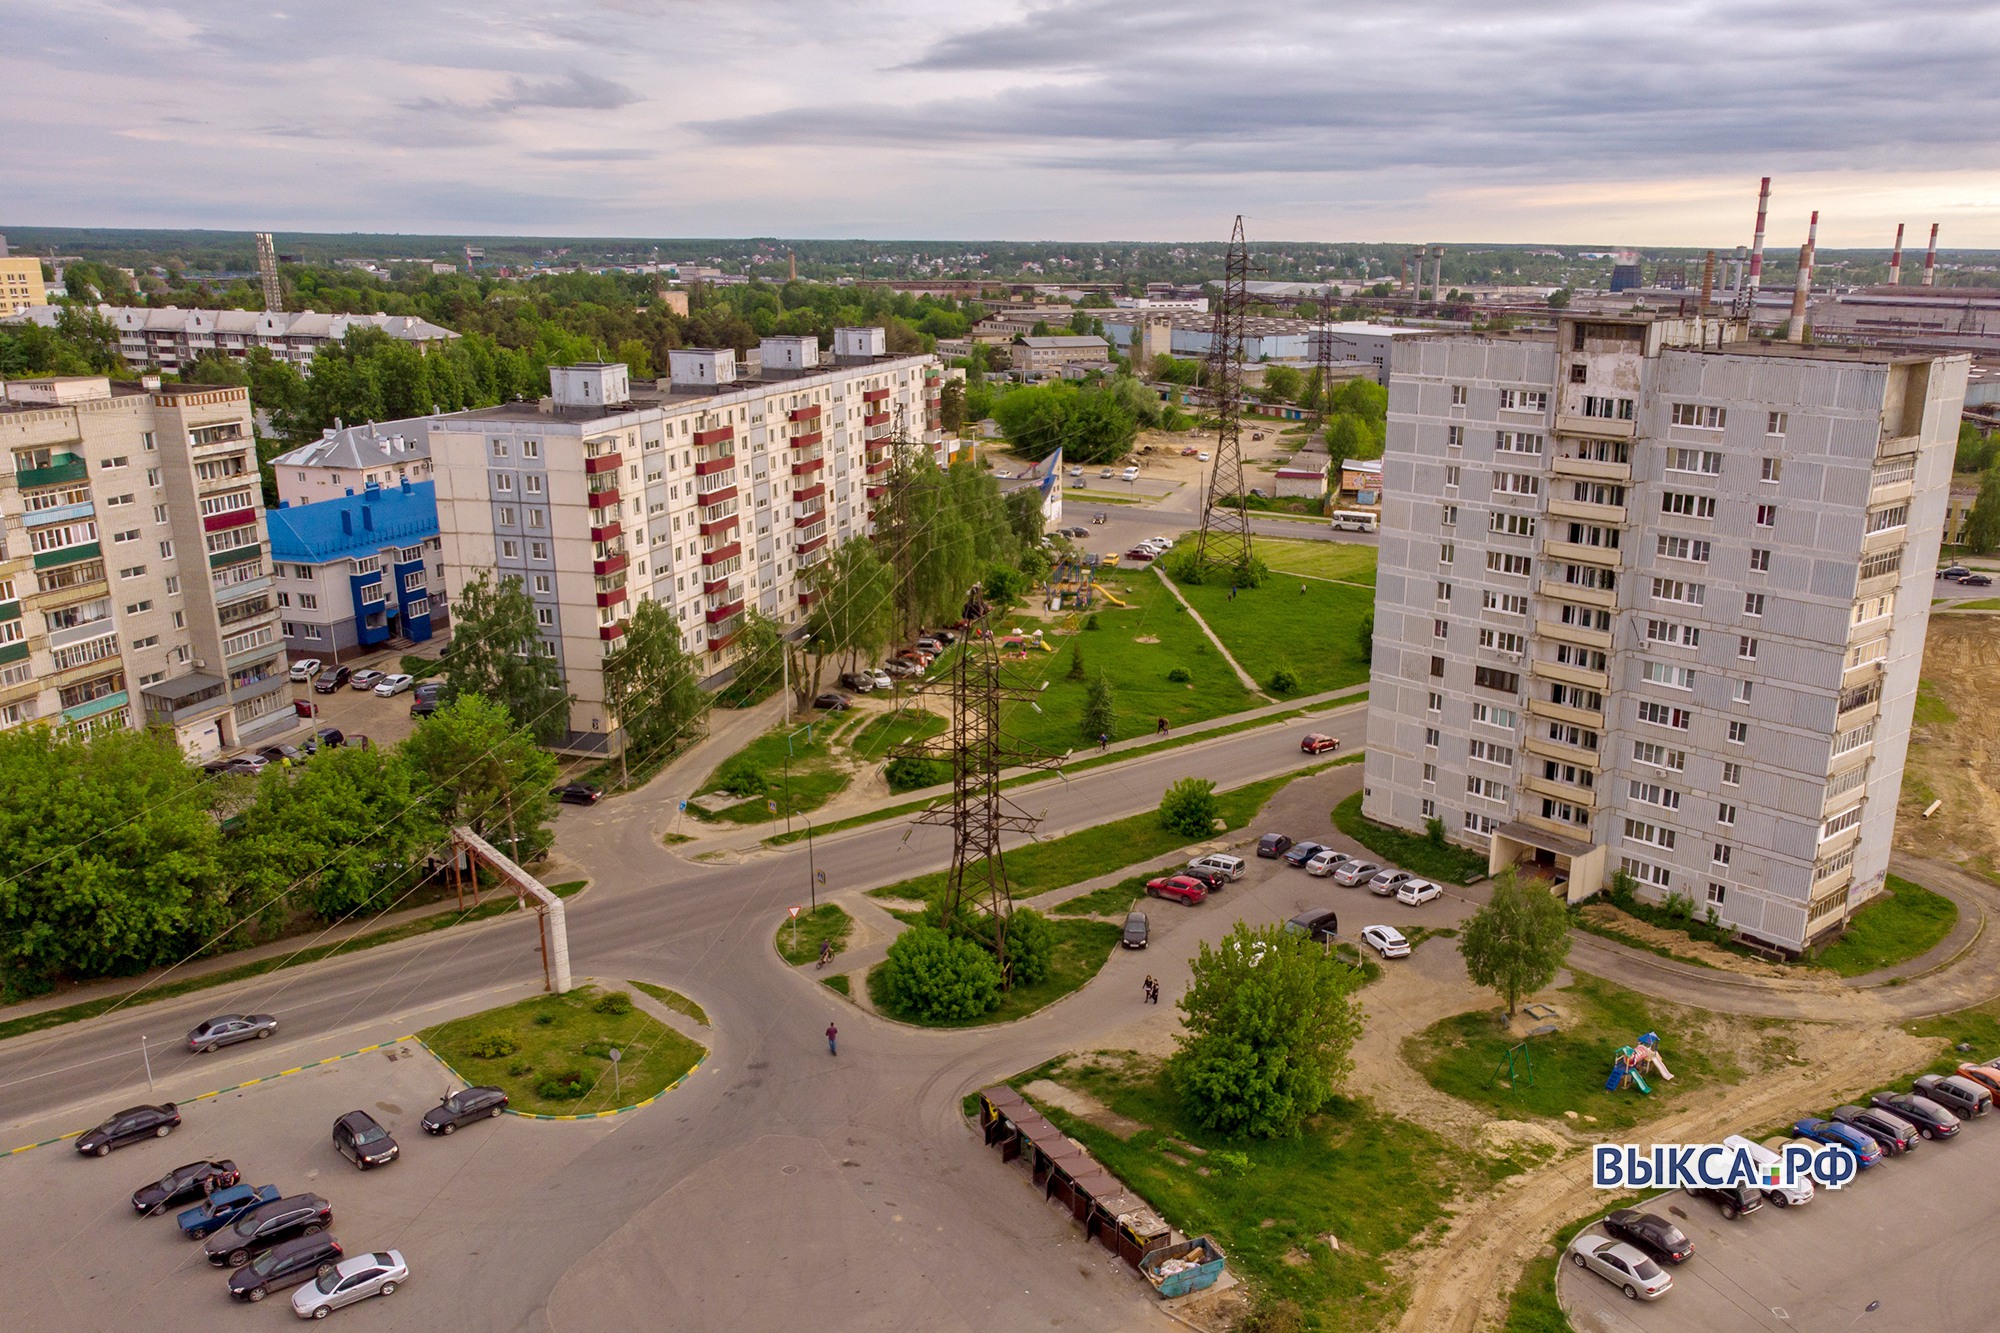 Выкса заняла шестое место в экономическом рейтинге муниципалитетов